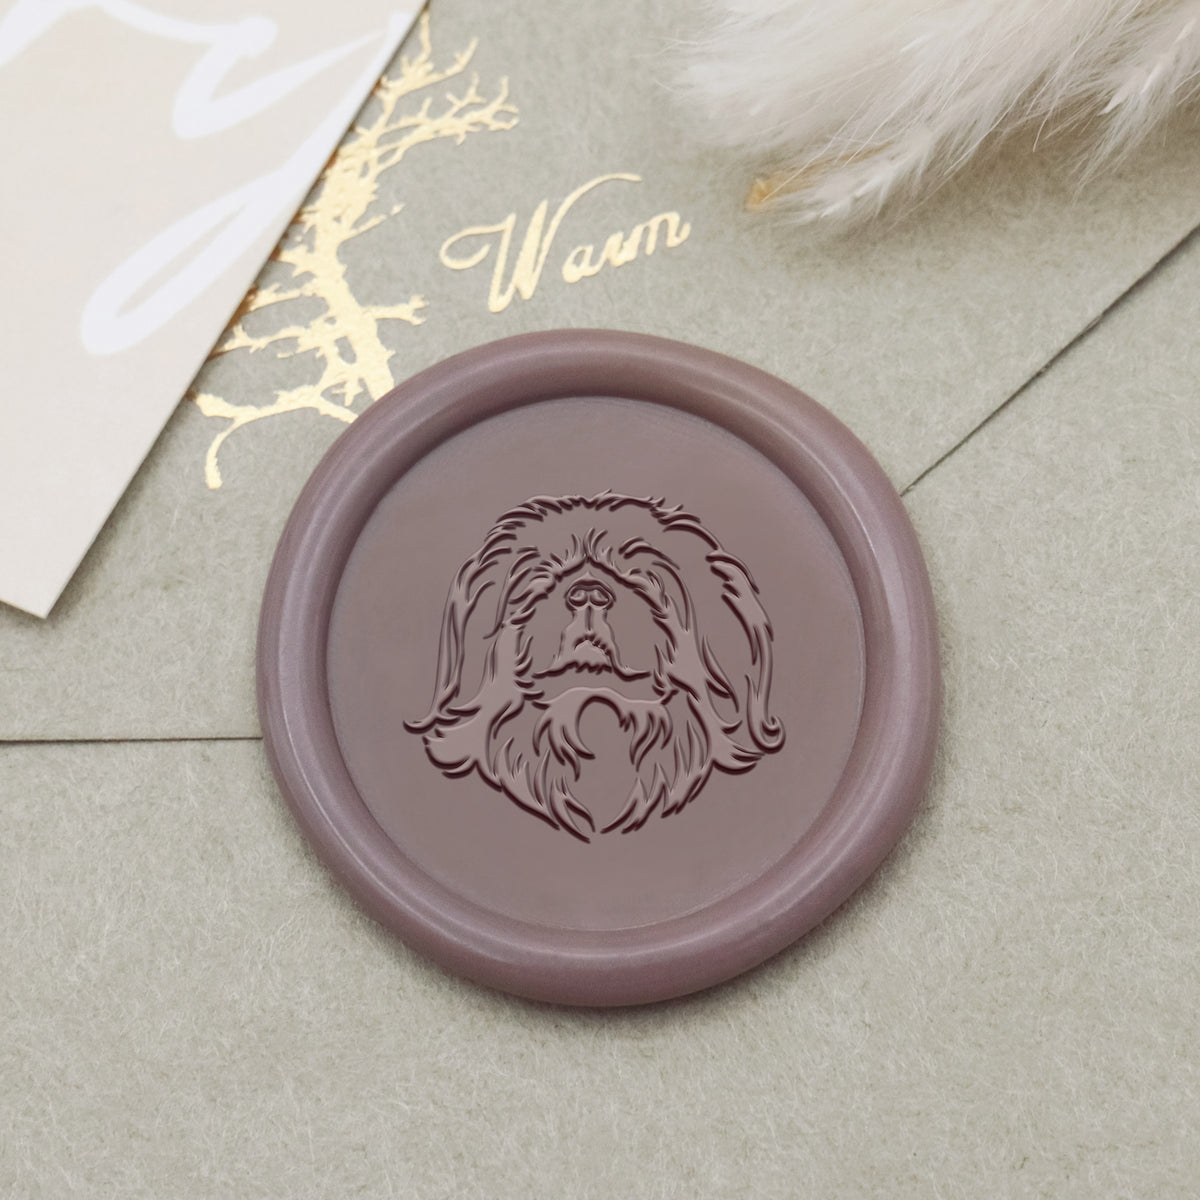 Pekingese Dog Wax Seal Stamp - Stamprints1